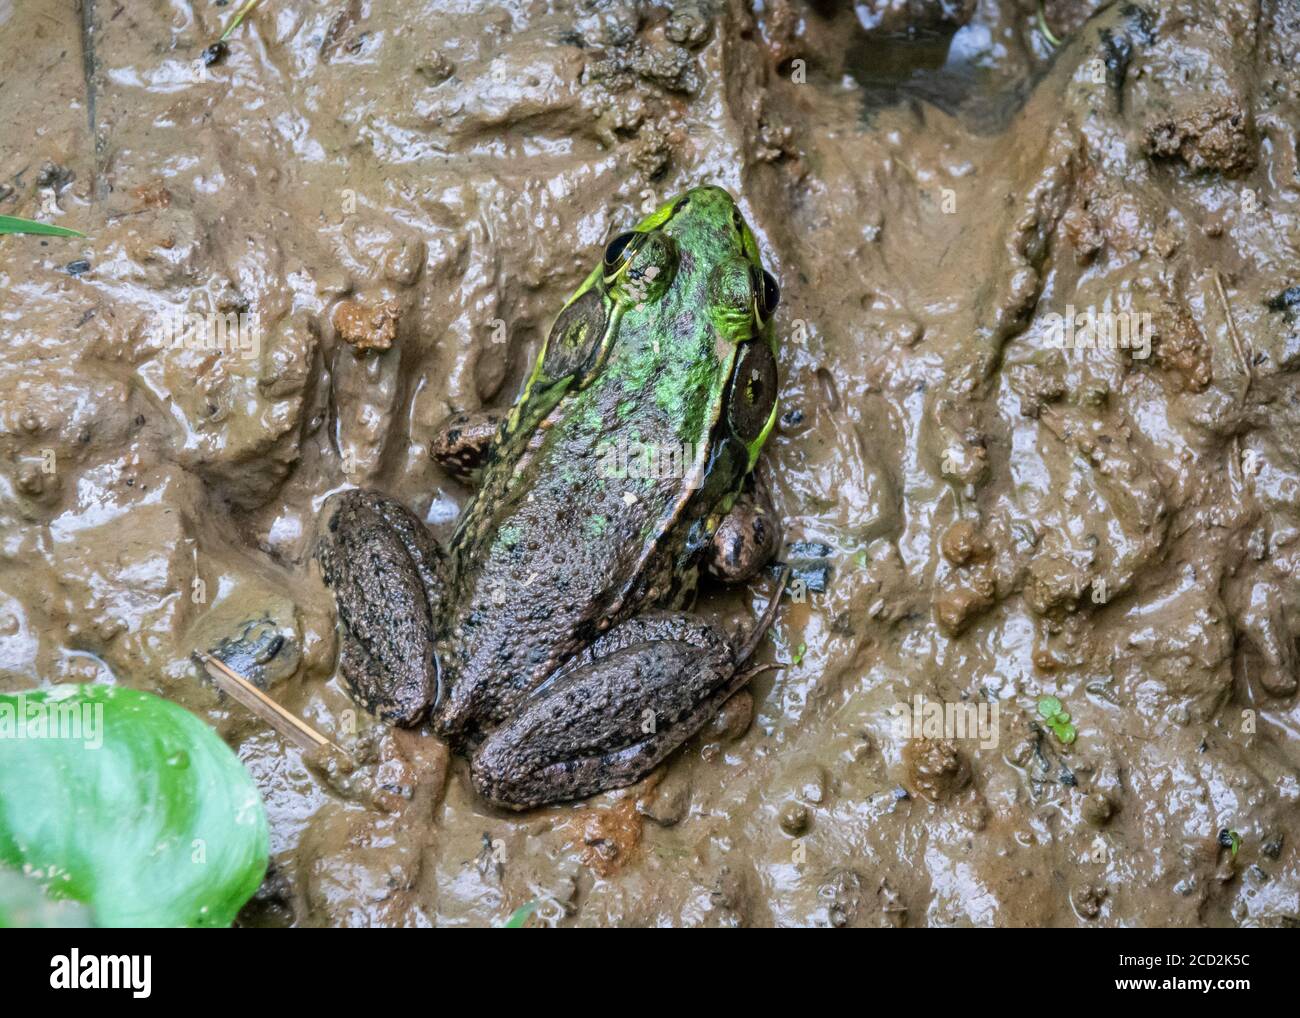 Una rana toro marrón con acentos verdes y manchas oscuras se ciñe en un pantano de Virginia. Foto de stock